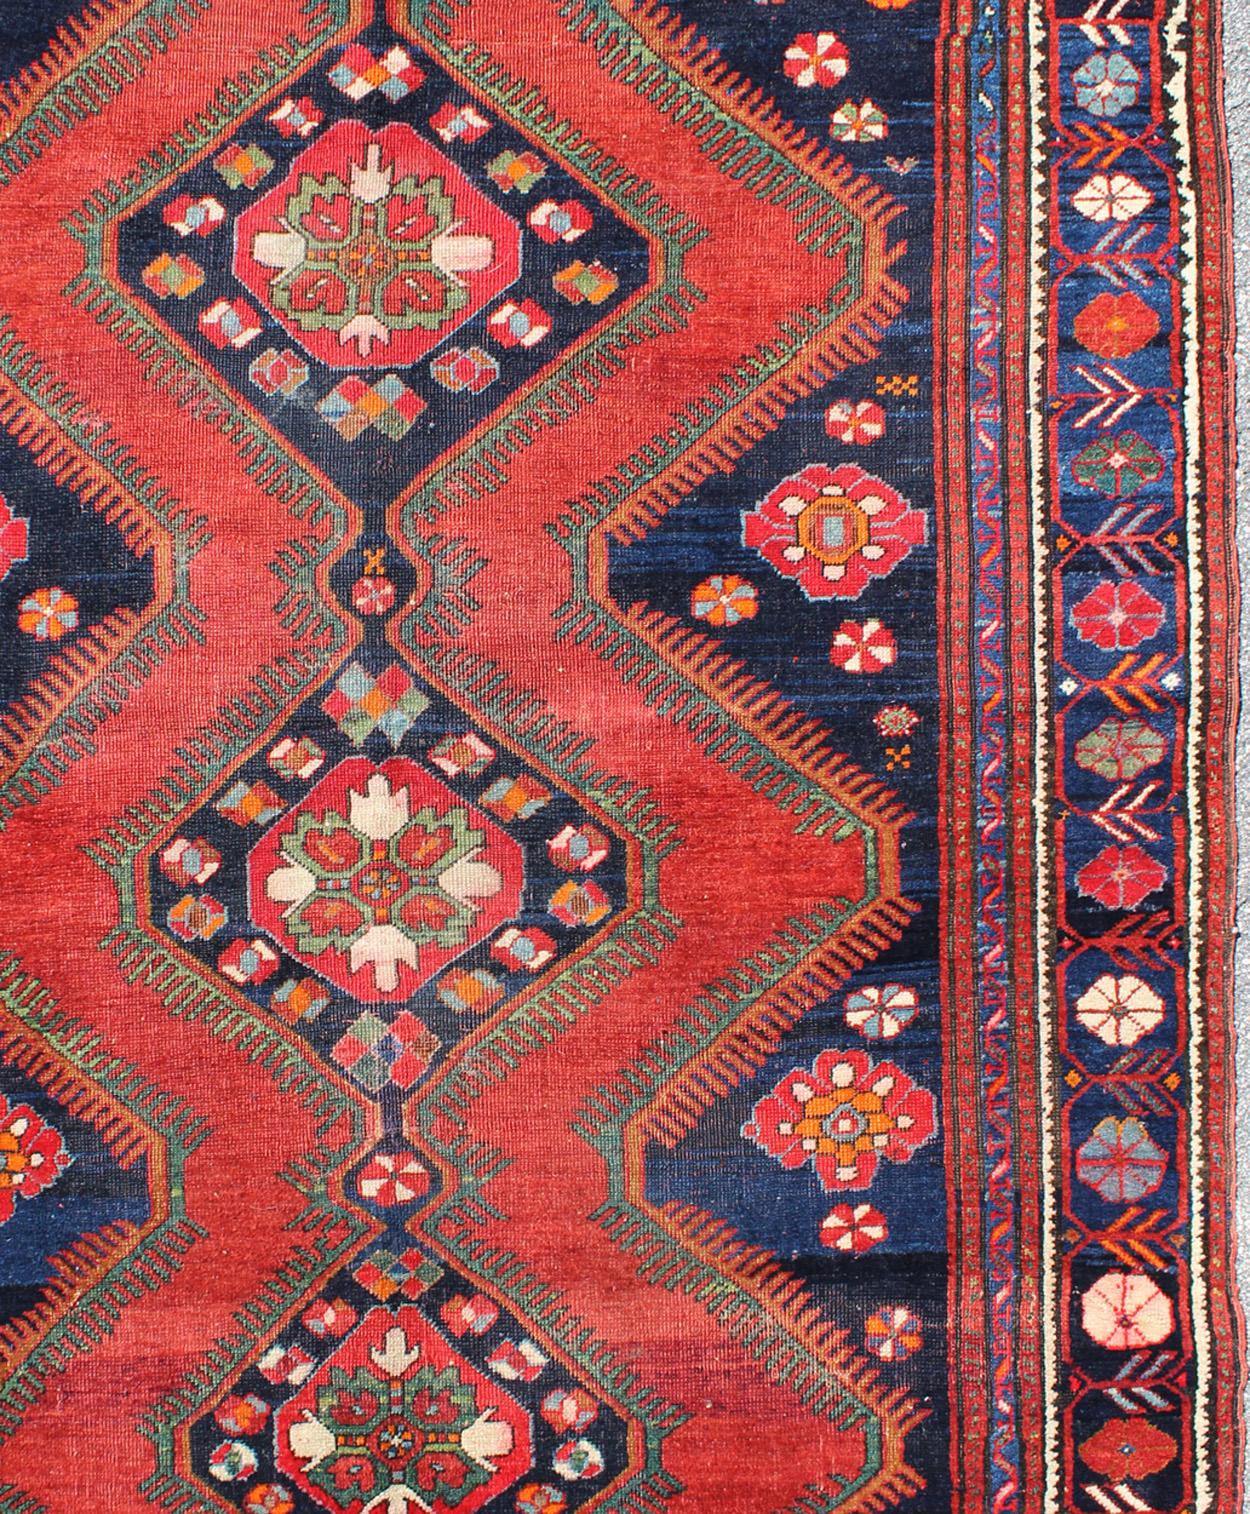 Geometrisches Design antiker kaukasischer Karabagh-Stammes-Teppich, Teppich / B-0501. Kaukasischer Teppich.

Maße: 5'6 x 7'5

Dieses antike kurdische Stück zeigt ein geometrisches Stammesmuster mit drei rautenförmigen Medaillons. Zu den